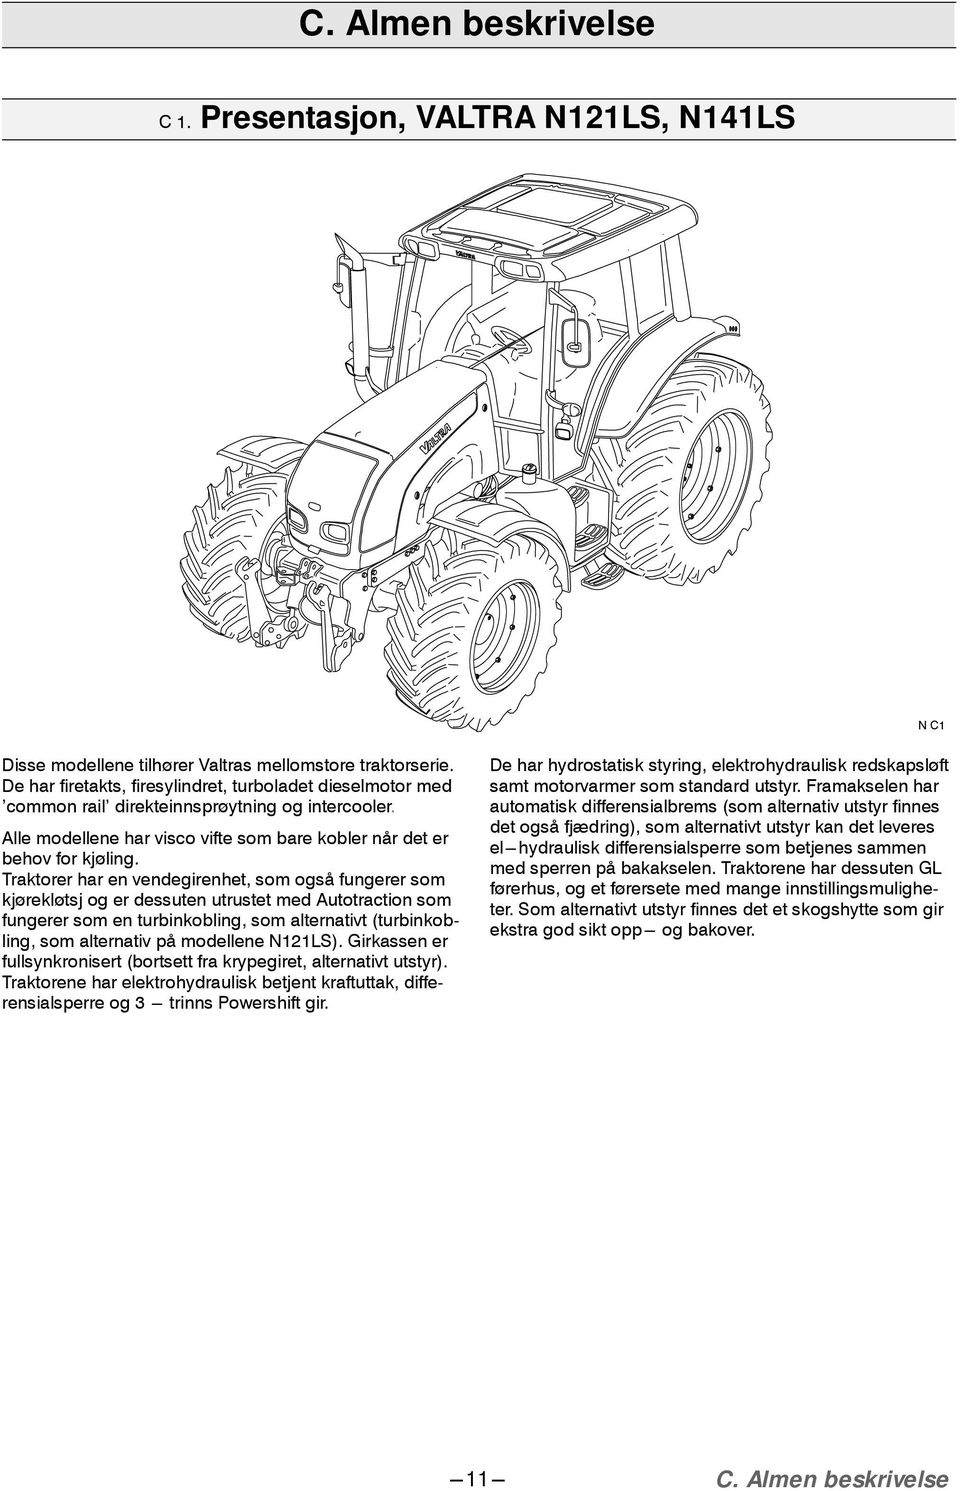 Traktorer har en vendegirenhet, som også fungerer som kjørekløtsj og er dessuten utrustet med Autotraction som fungerer som en turbinkobling, som alternativt (turbinkobling, som alternativ på